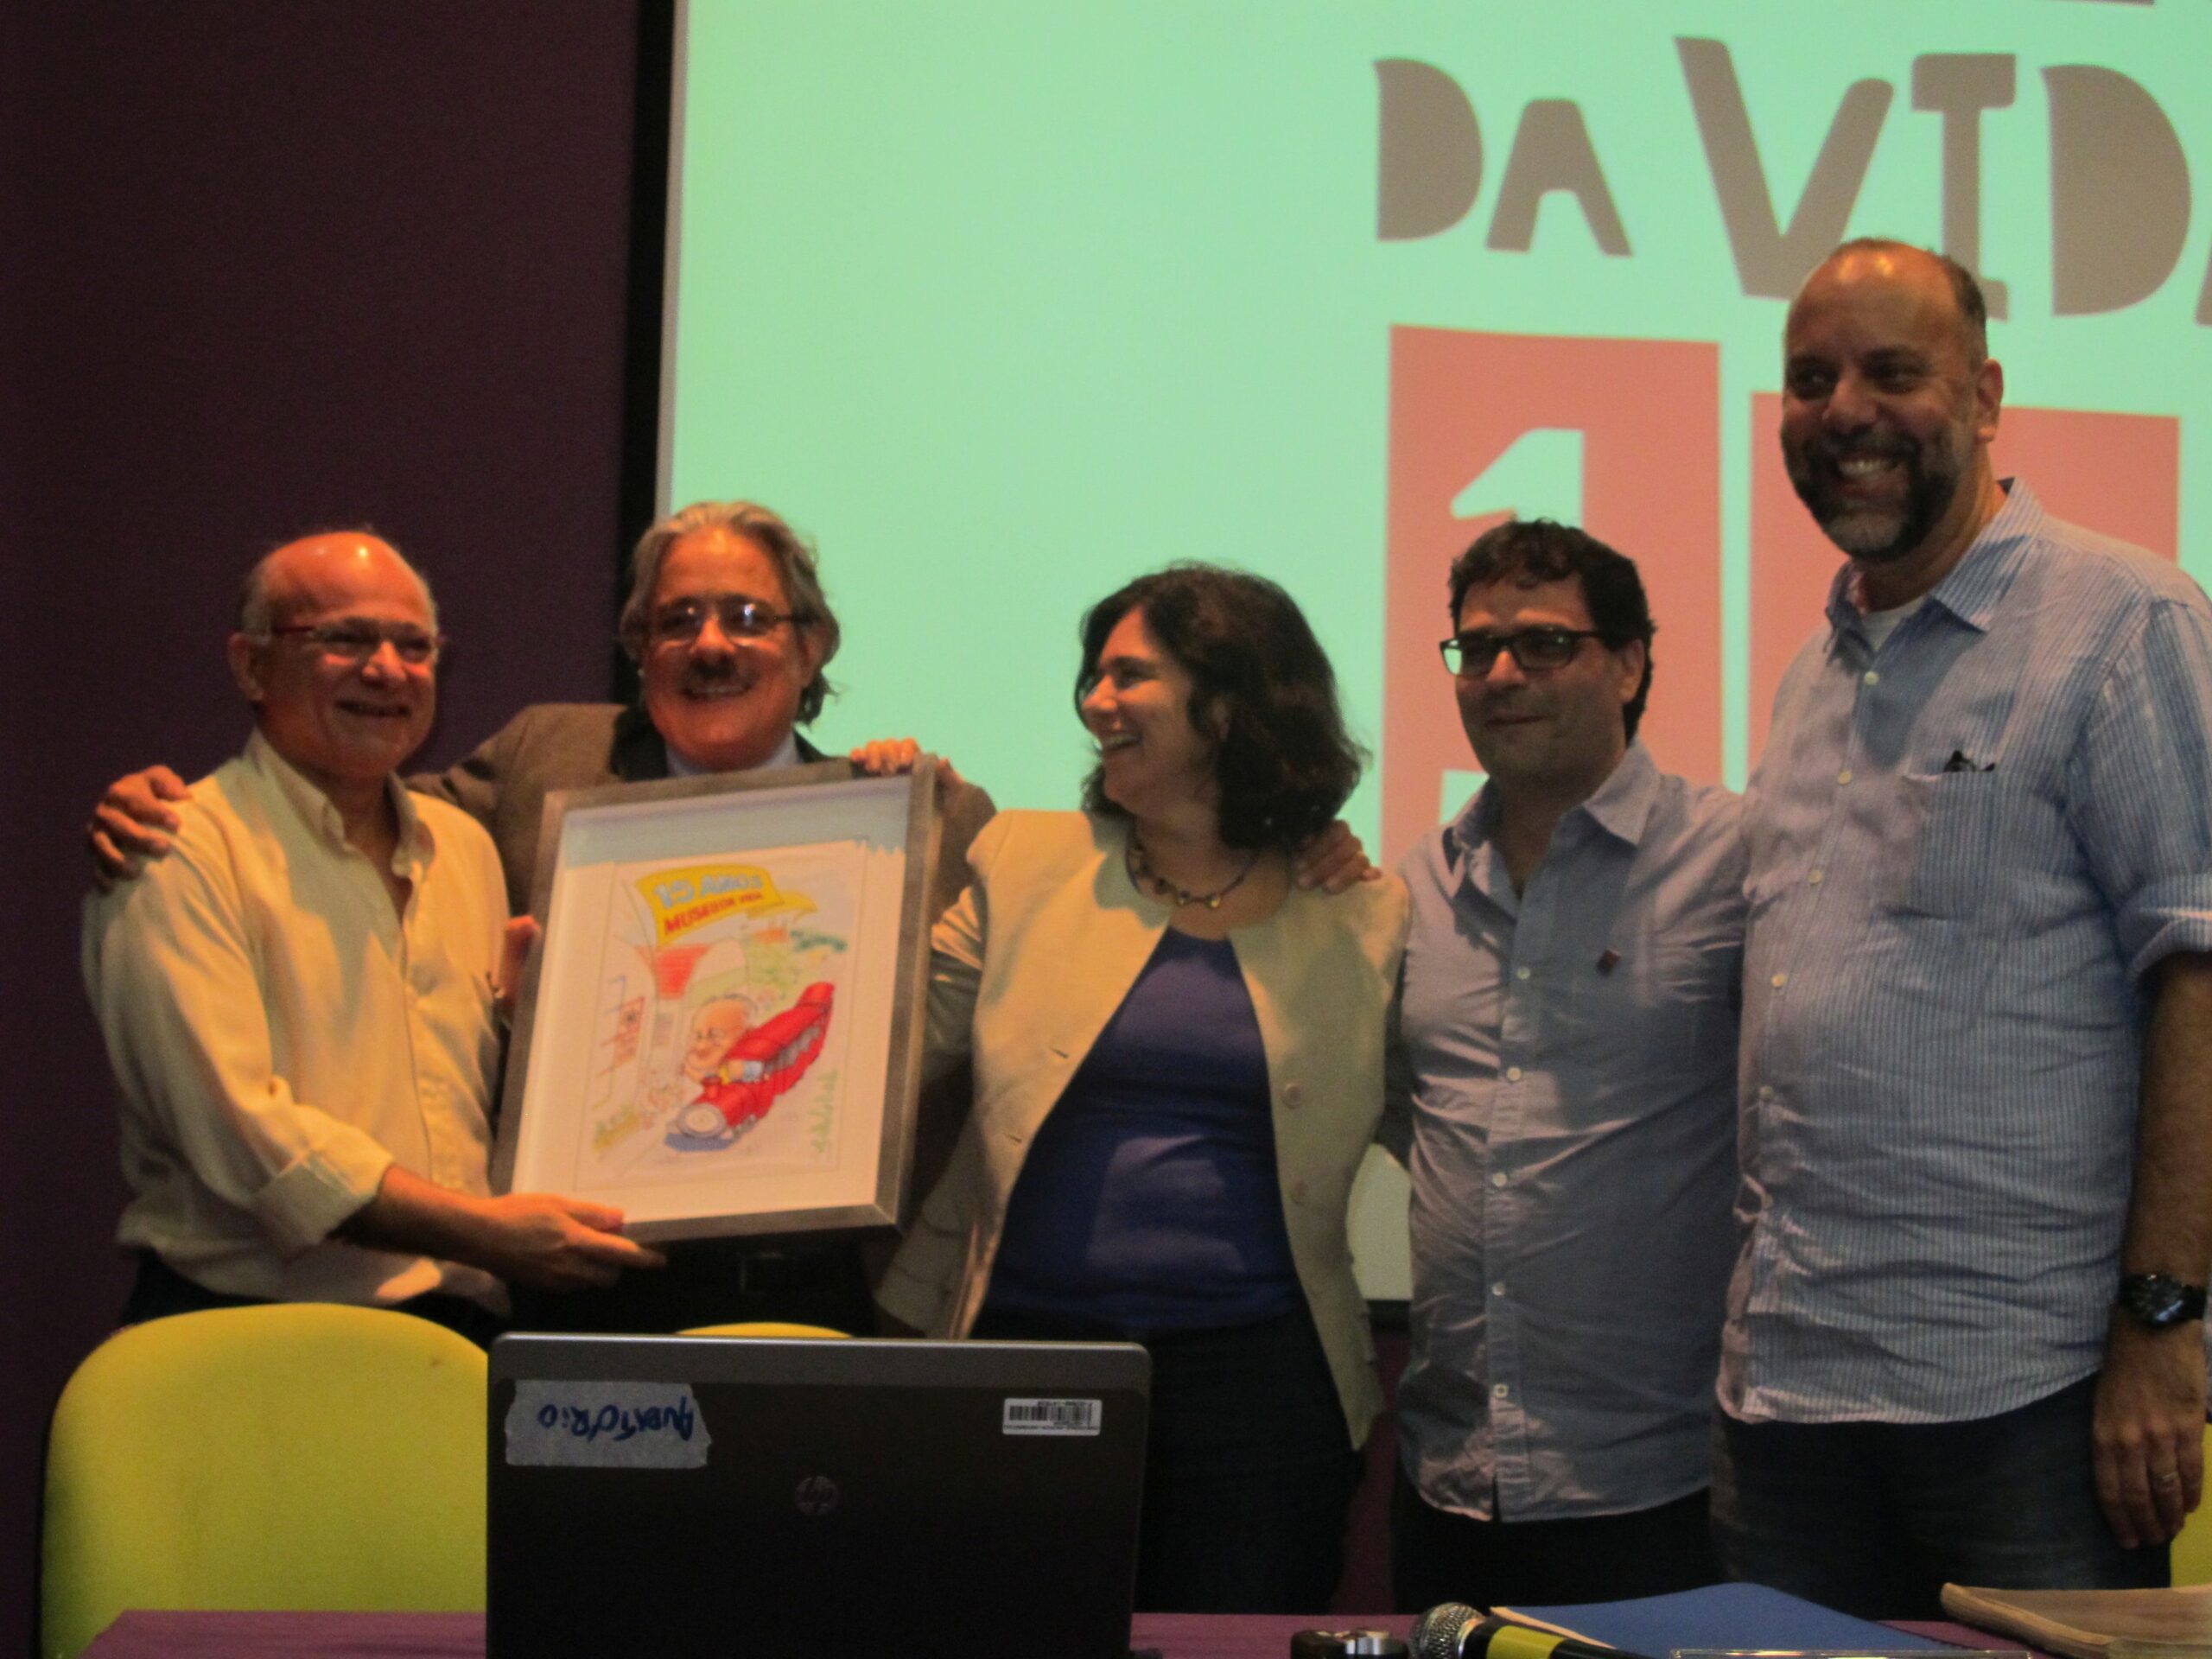 José Ribamar Ferreira recebe placa de homenagem das mãos de Paulo Gadelha. Na foto com Nísia Trindade, Diego Bevilaqua e Paulo Elian.